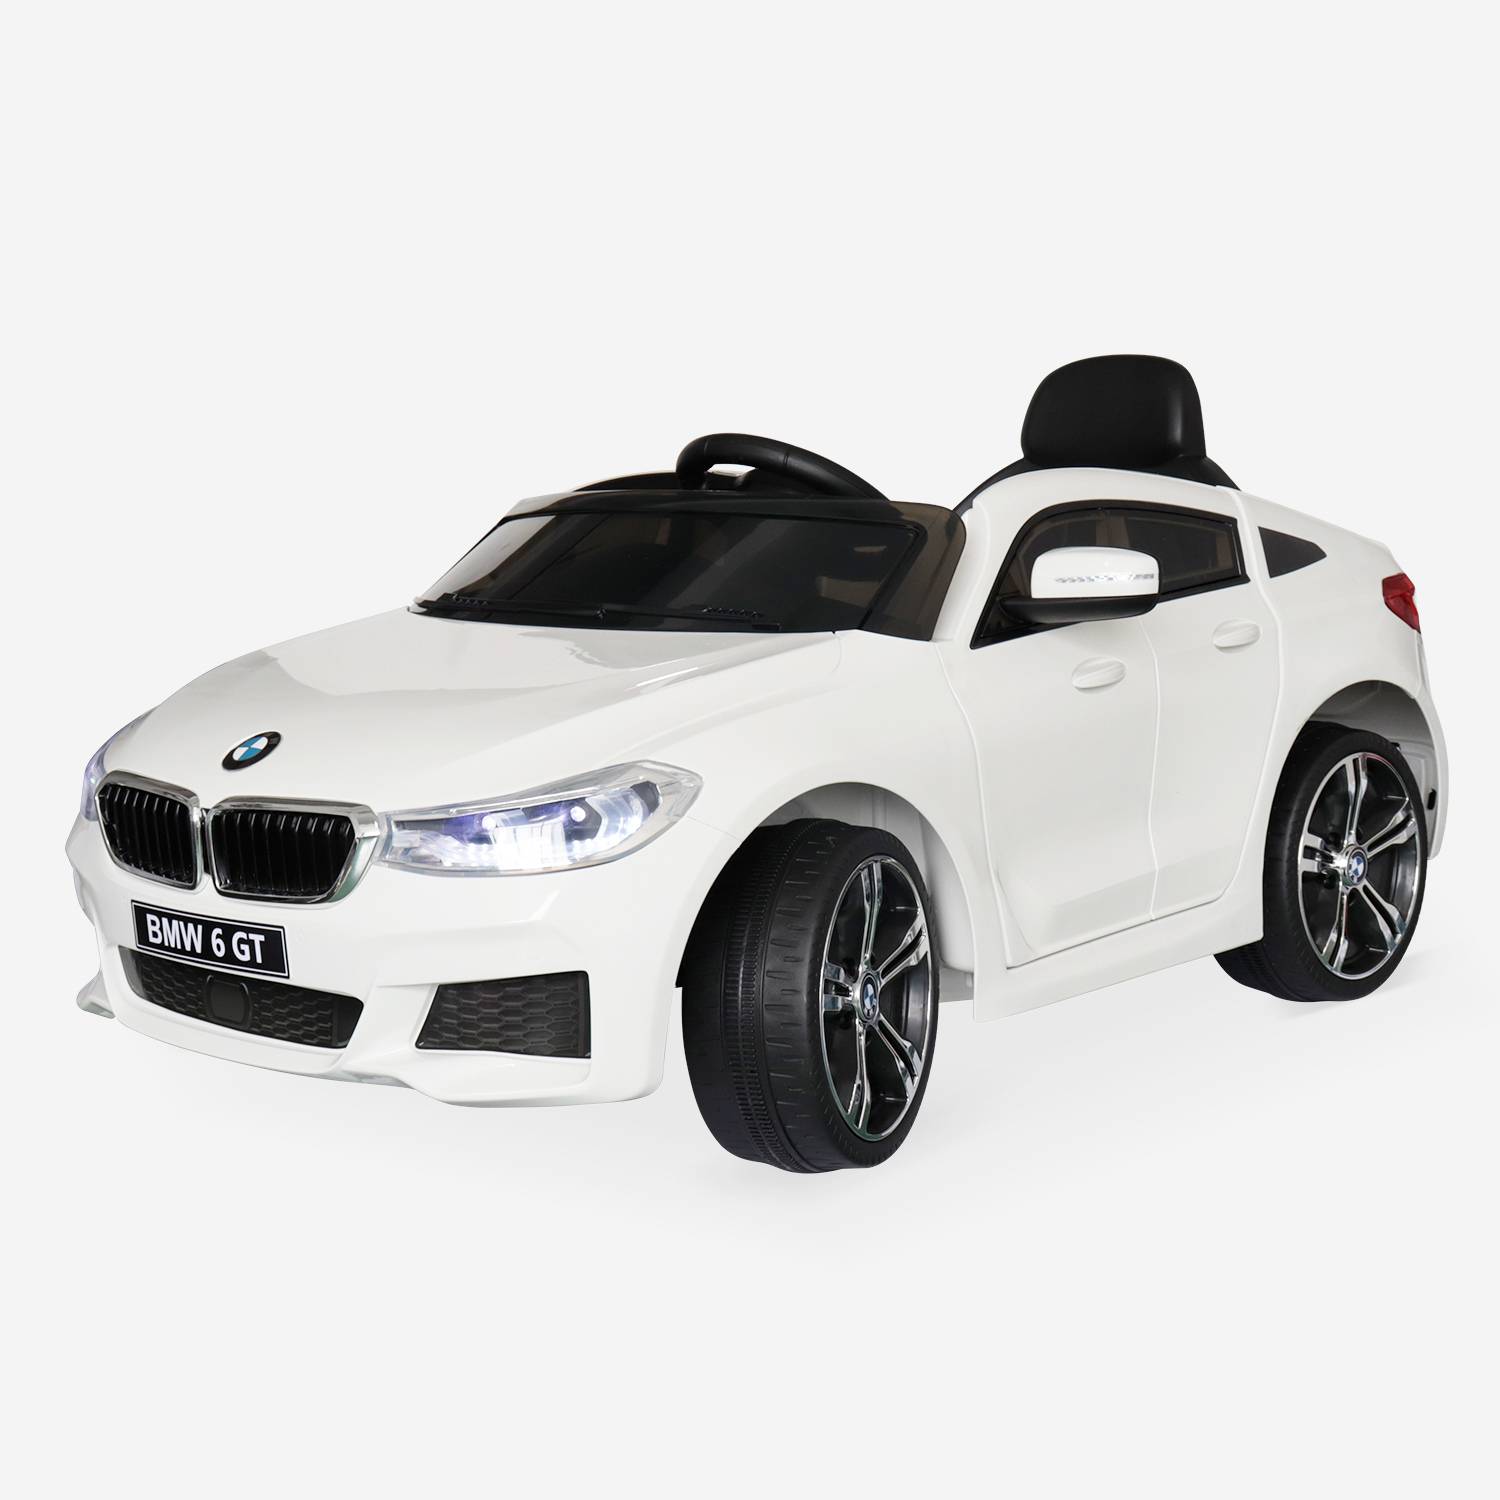 BMW Série 6 GT Gran Turismo branco, carro elétrico para crianças 12V 4 Ah, 1 lugar, com rádio e controlo remoto,sweeek,Photo2